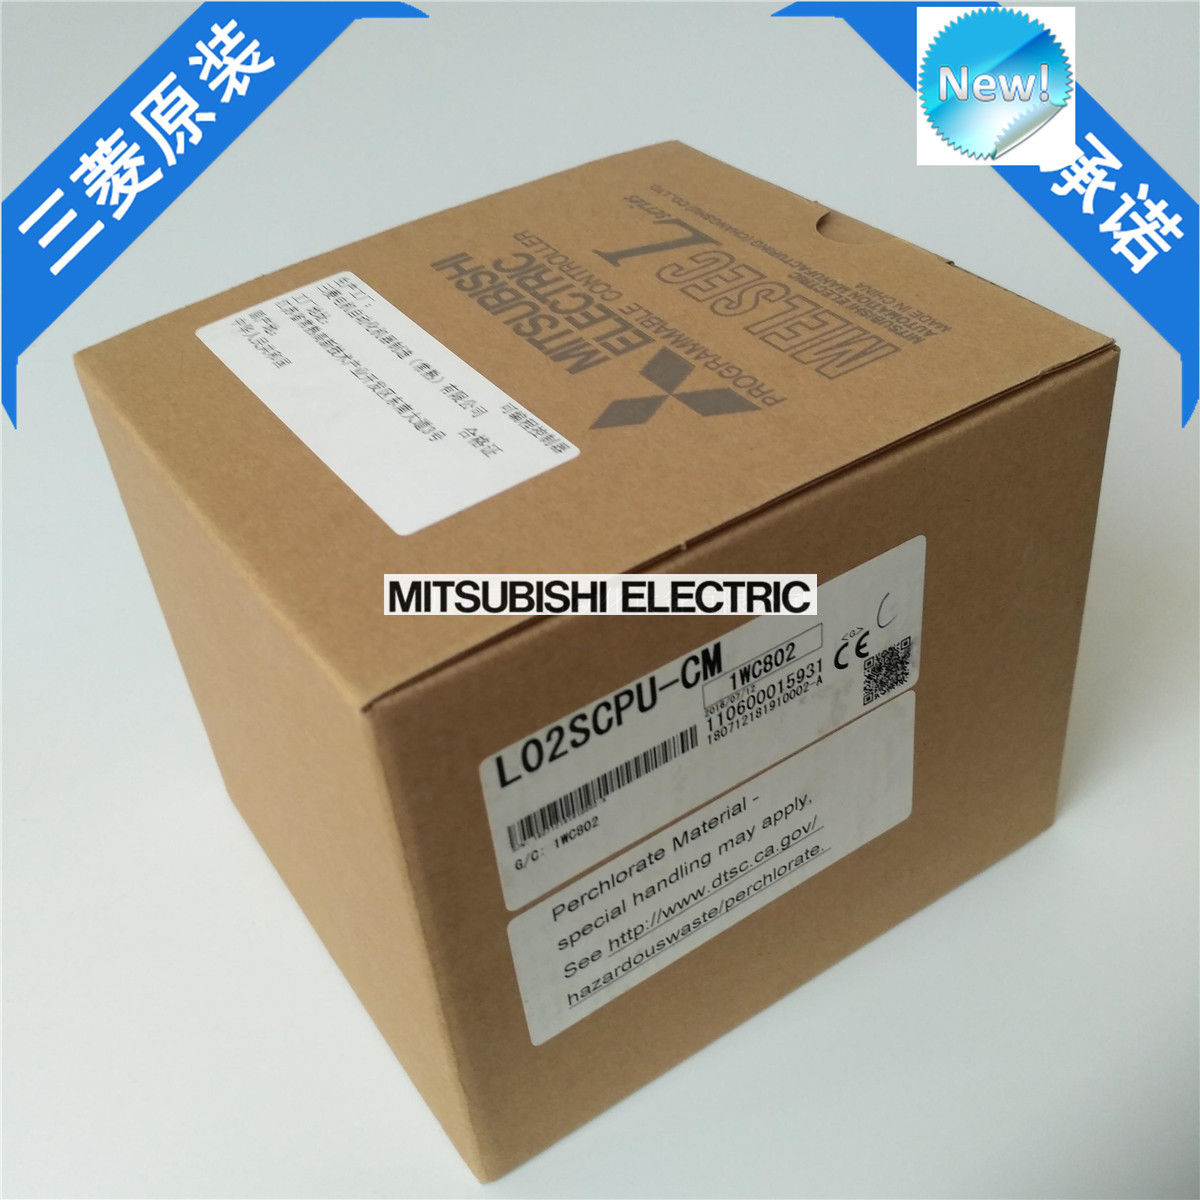 Brand New Mitsubishi PLC L02SCPU-CM In Box L02SCPUCM - Click Image to Close